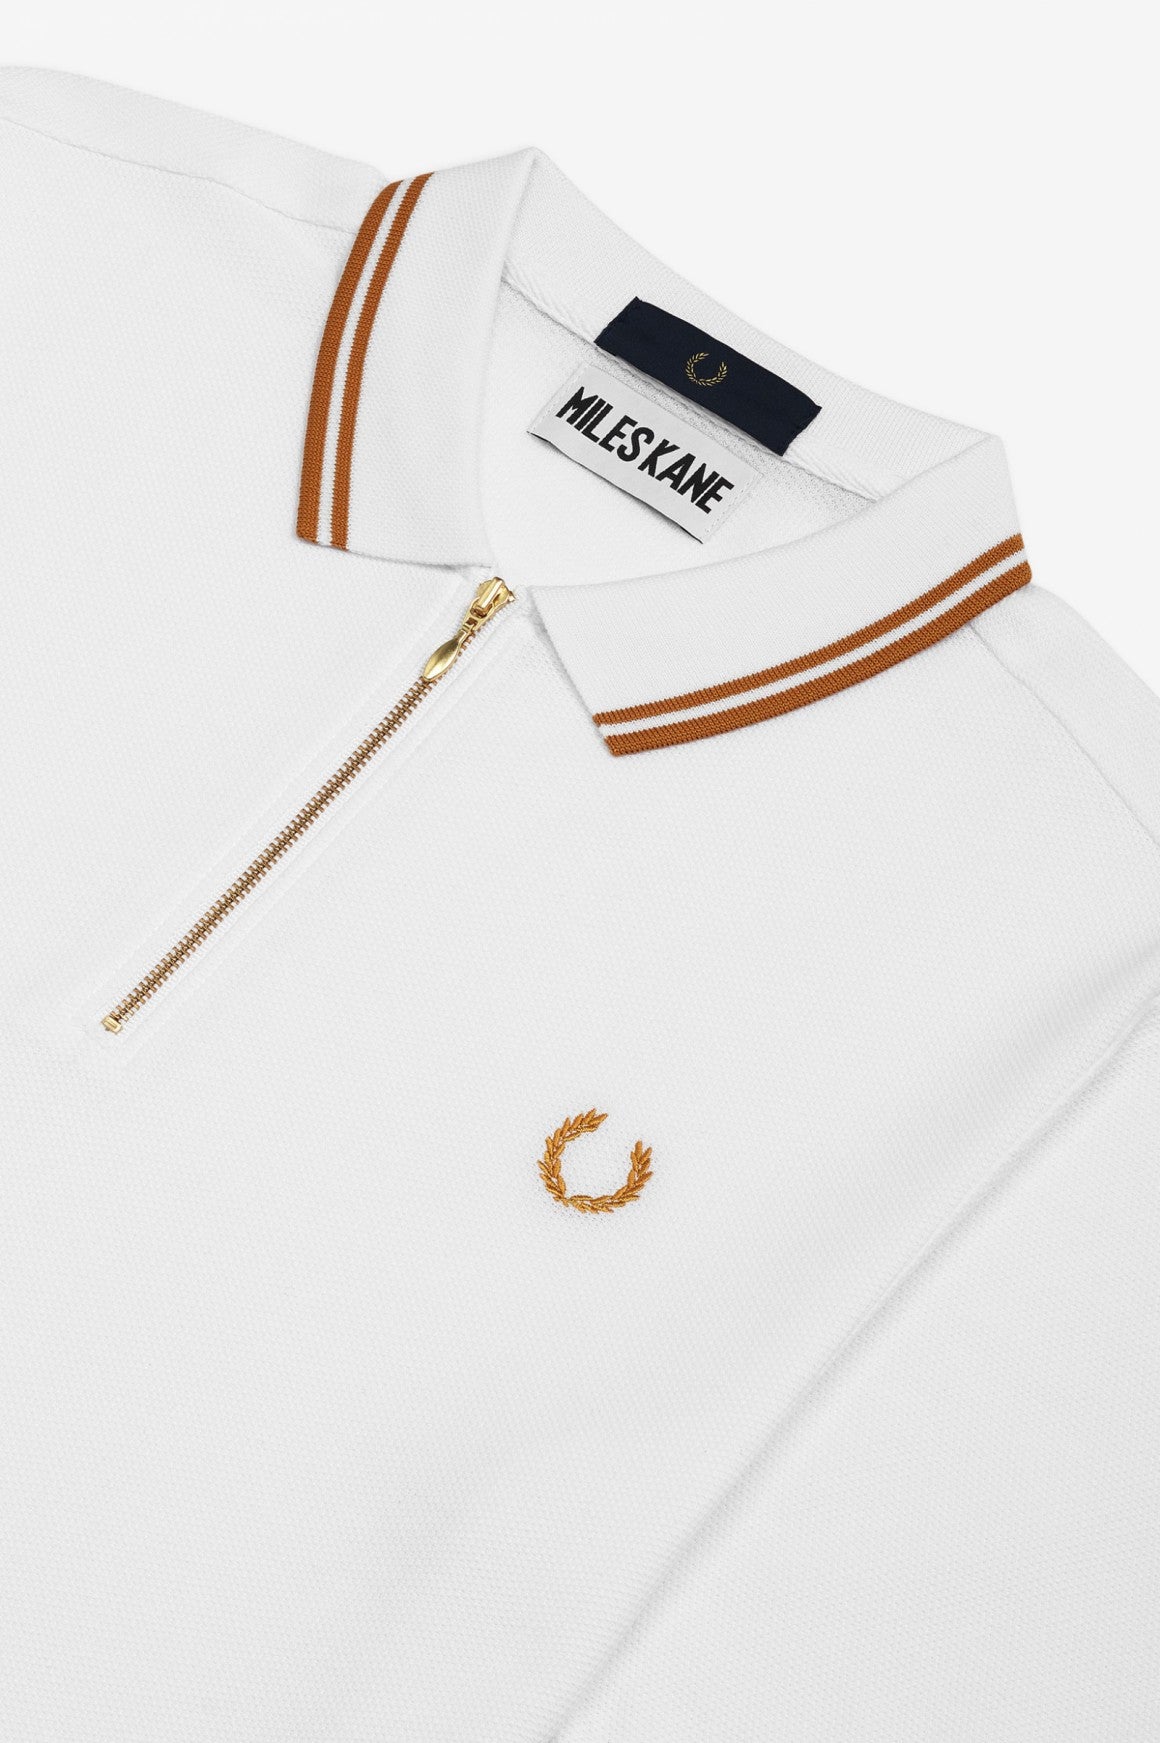 Miles Kane Zip-Neck Pique Shirt